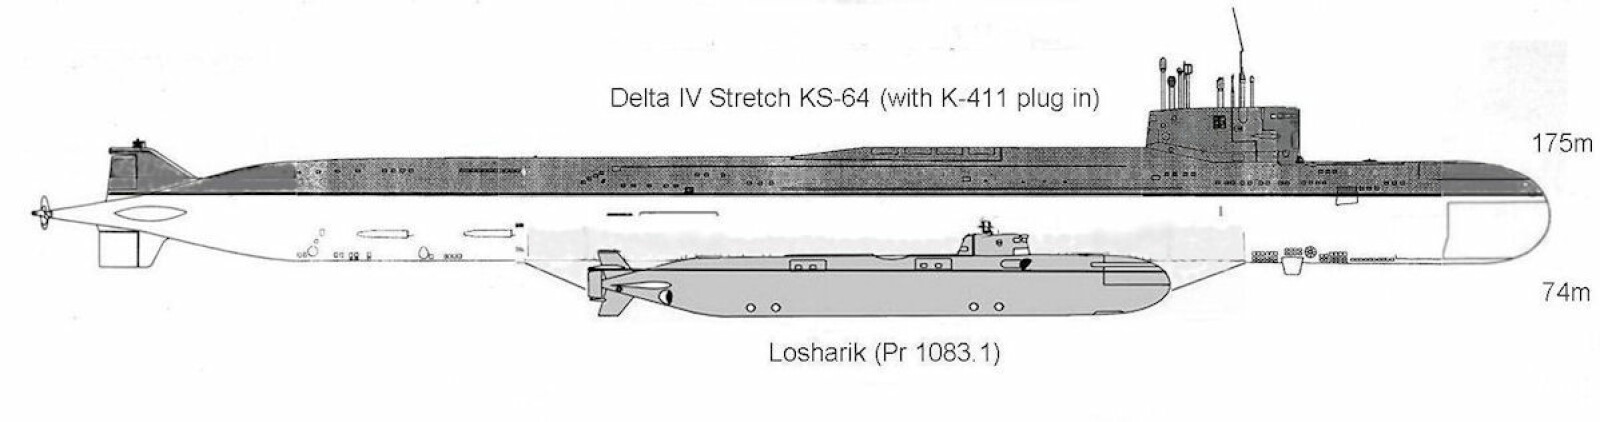 <b><SPAN CLASS=BOLD>IKKE EN VANLIG UBÅT:</b></span> BS-64 Podmoskovye var moderubåten til den 73 meter lange spionubåten Losharik, som var festet under Delta 4-ubåtens kjøl